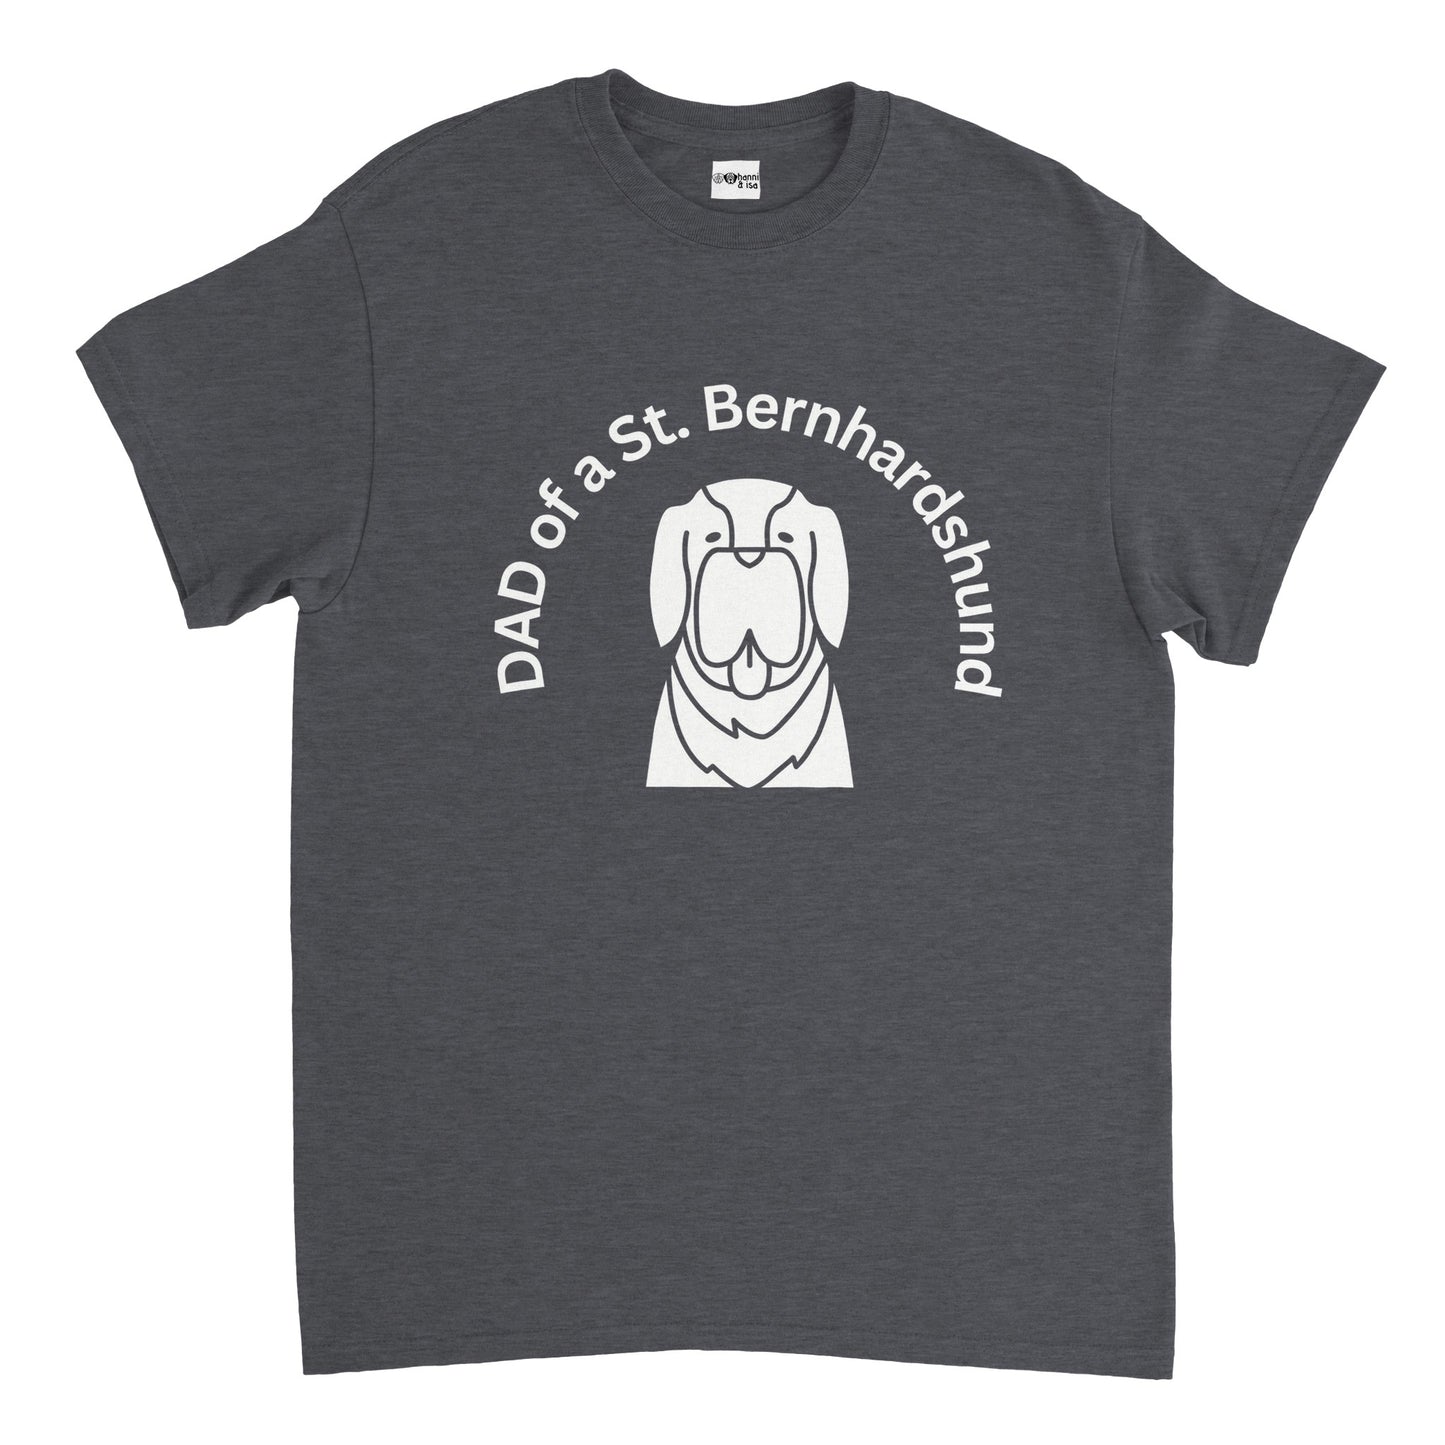 Dad of a St. Bernard Dog Men's T-Shirt